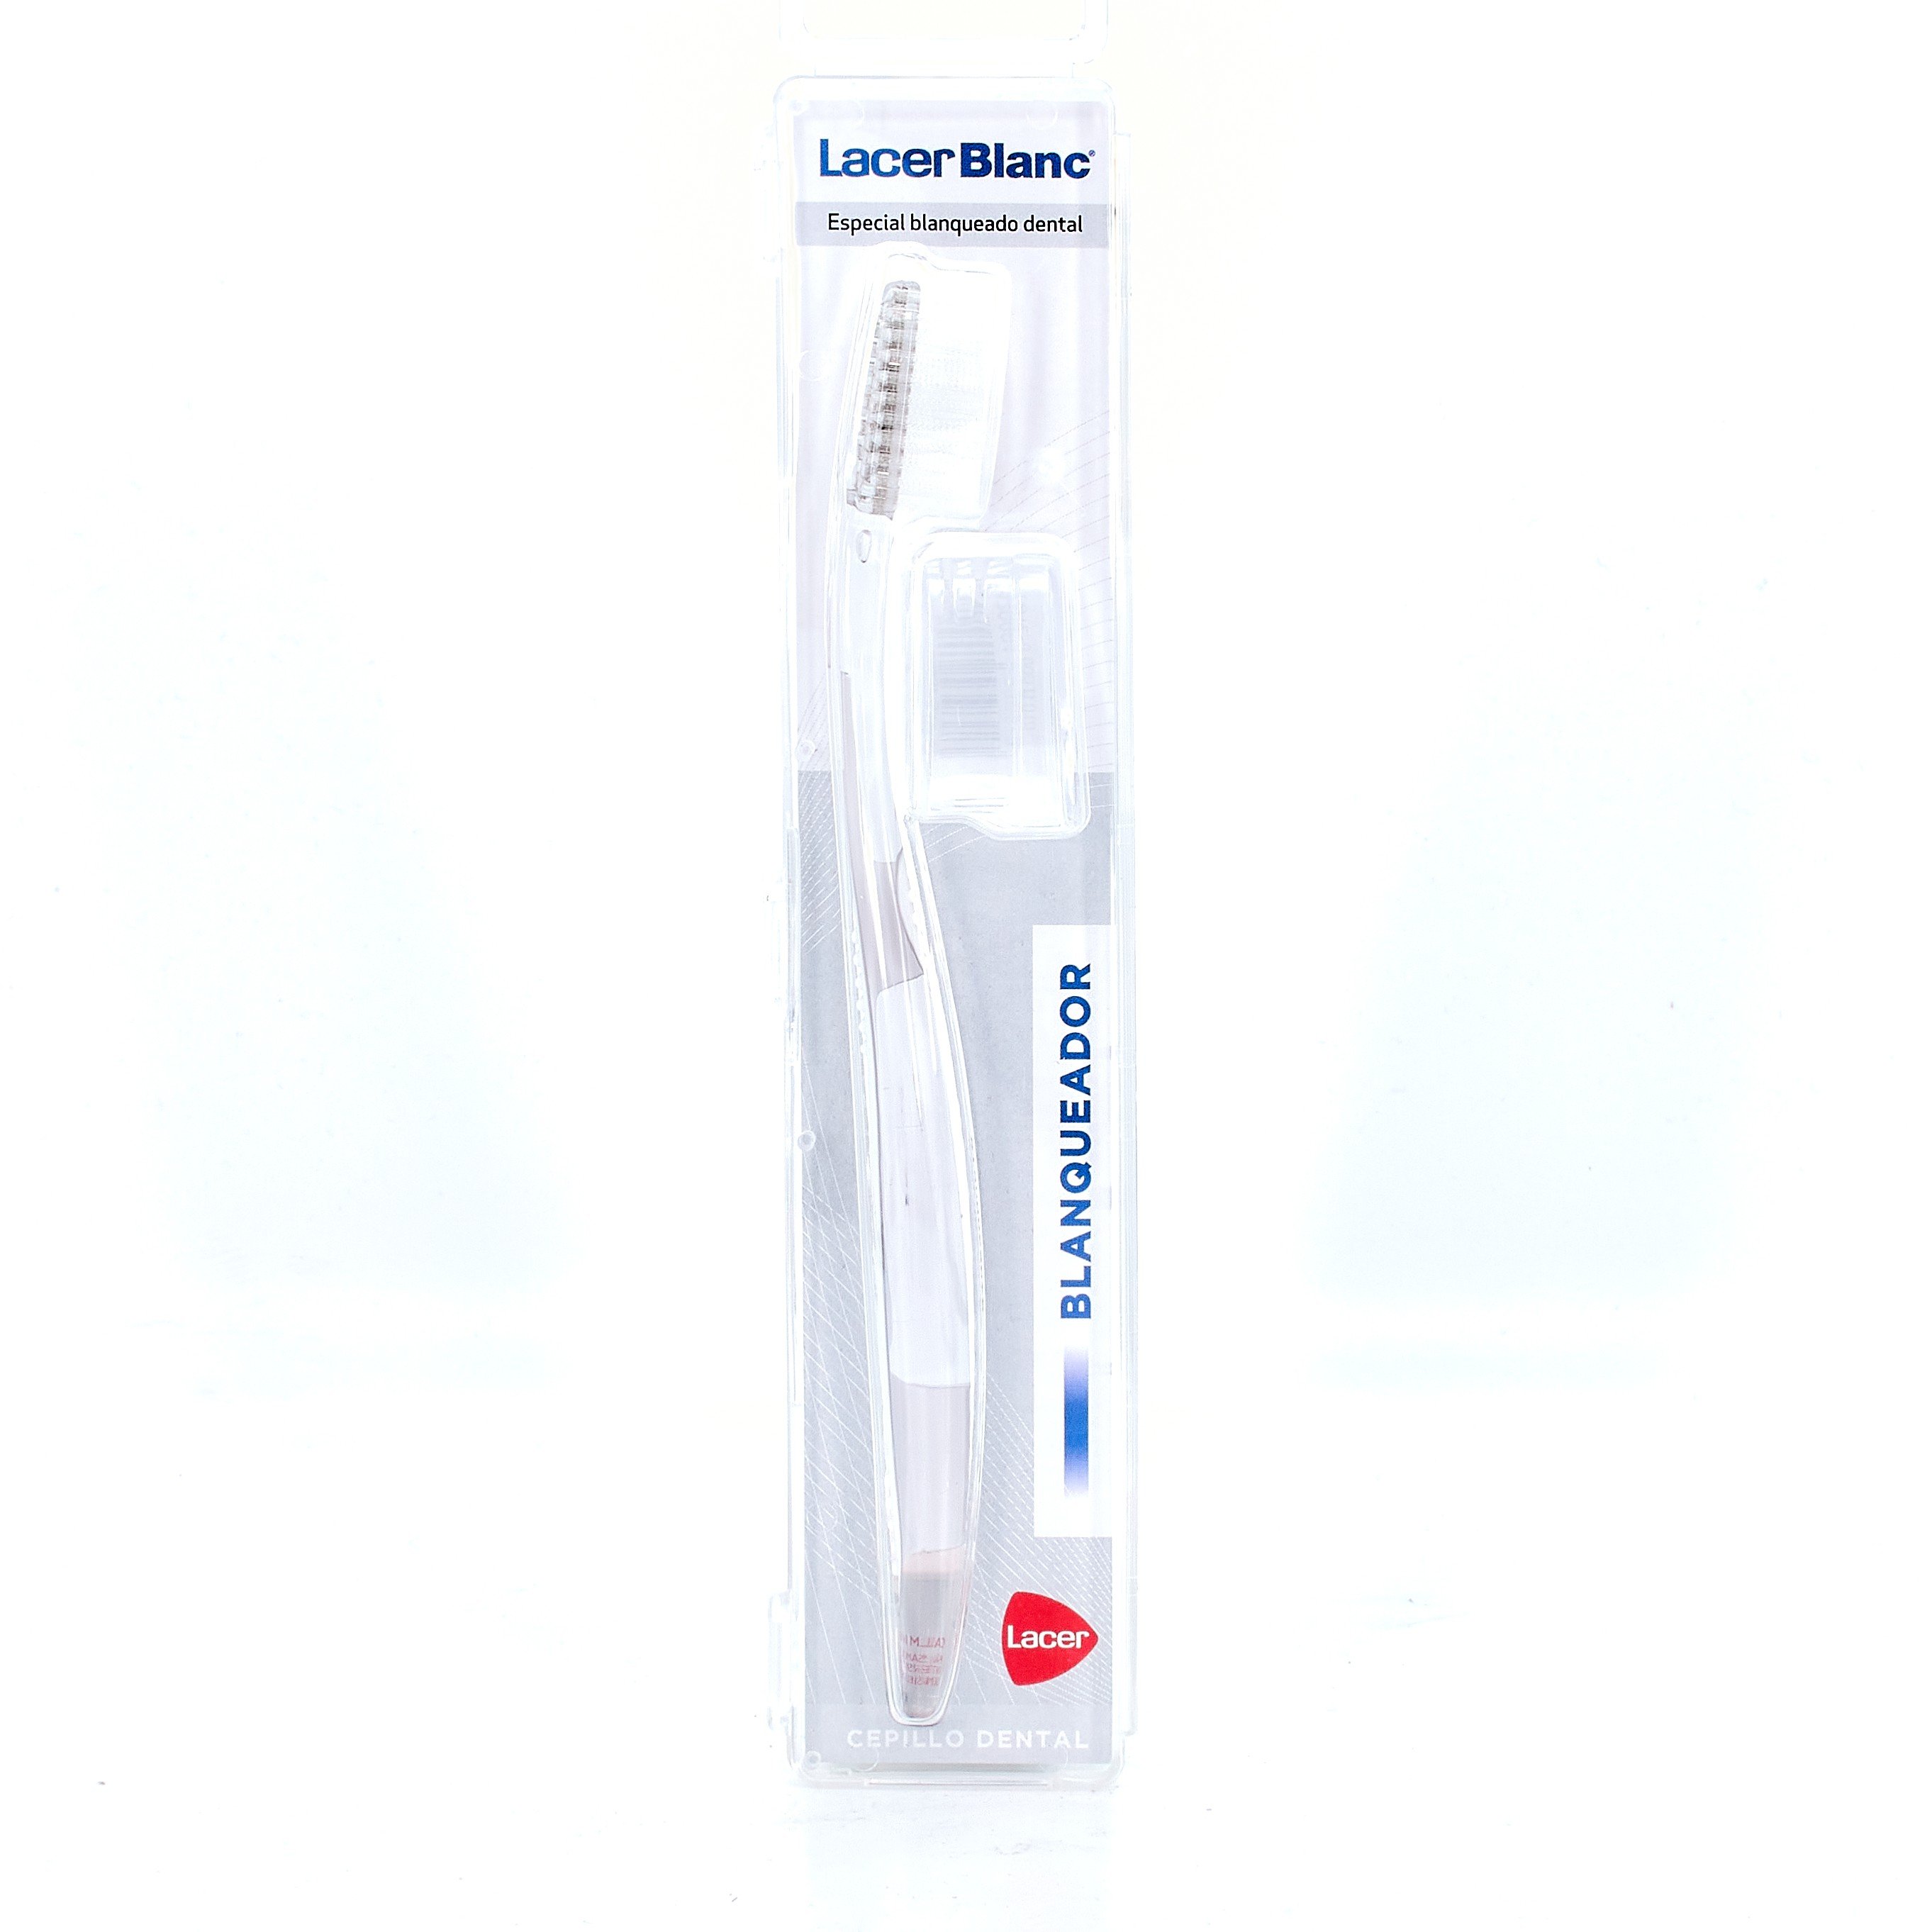 LacerBlanc Cepillo Dental Blanqueador